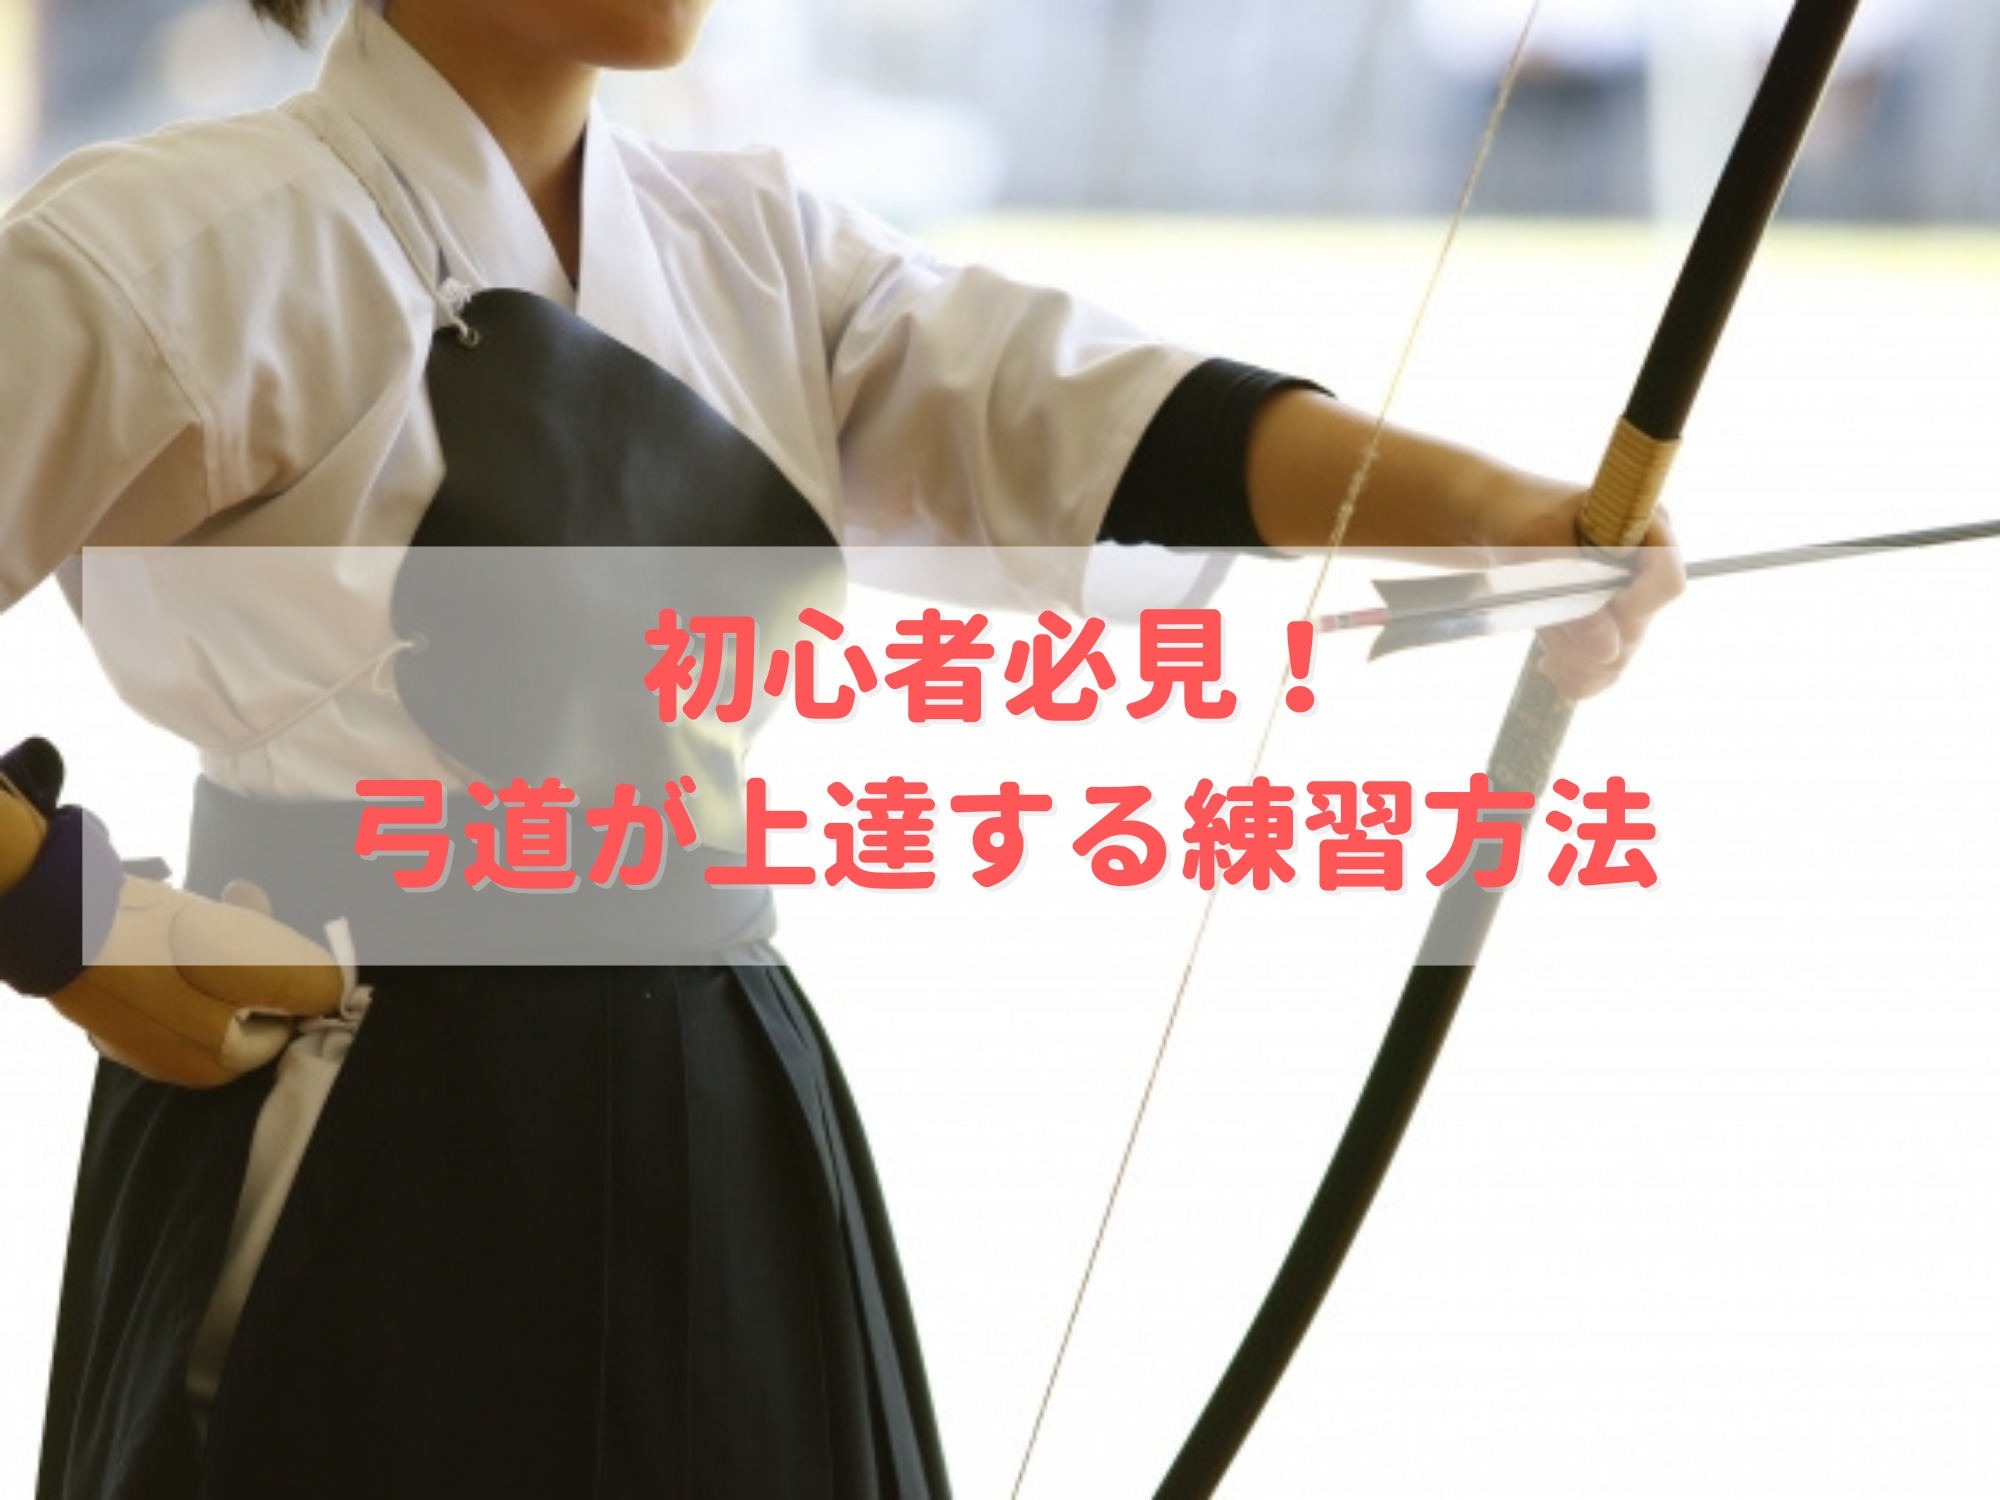 弓道が上達する練習方法のキービジュアル